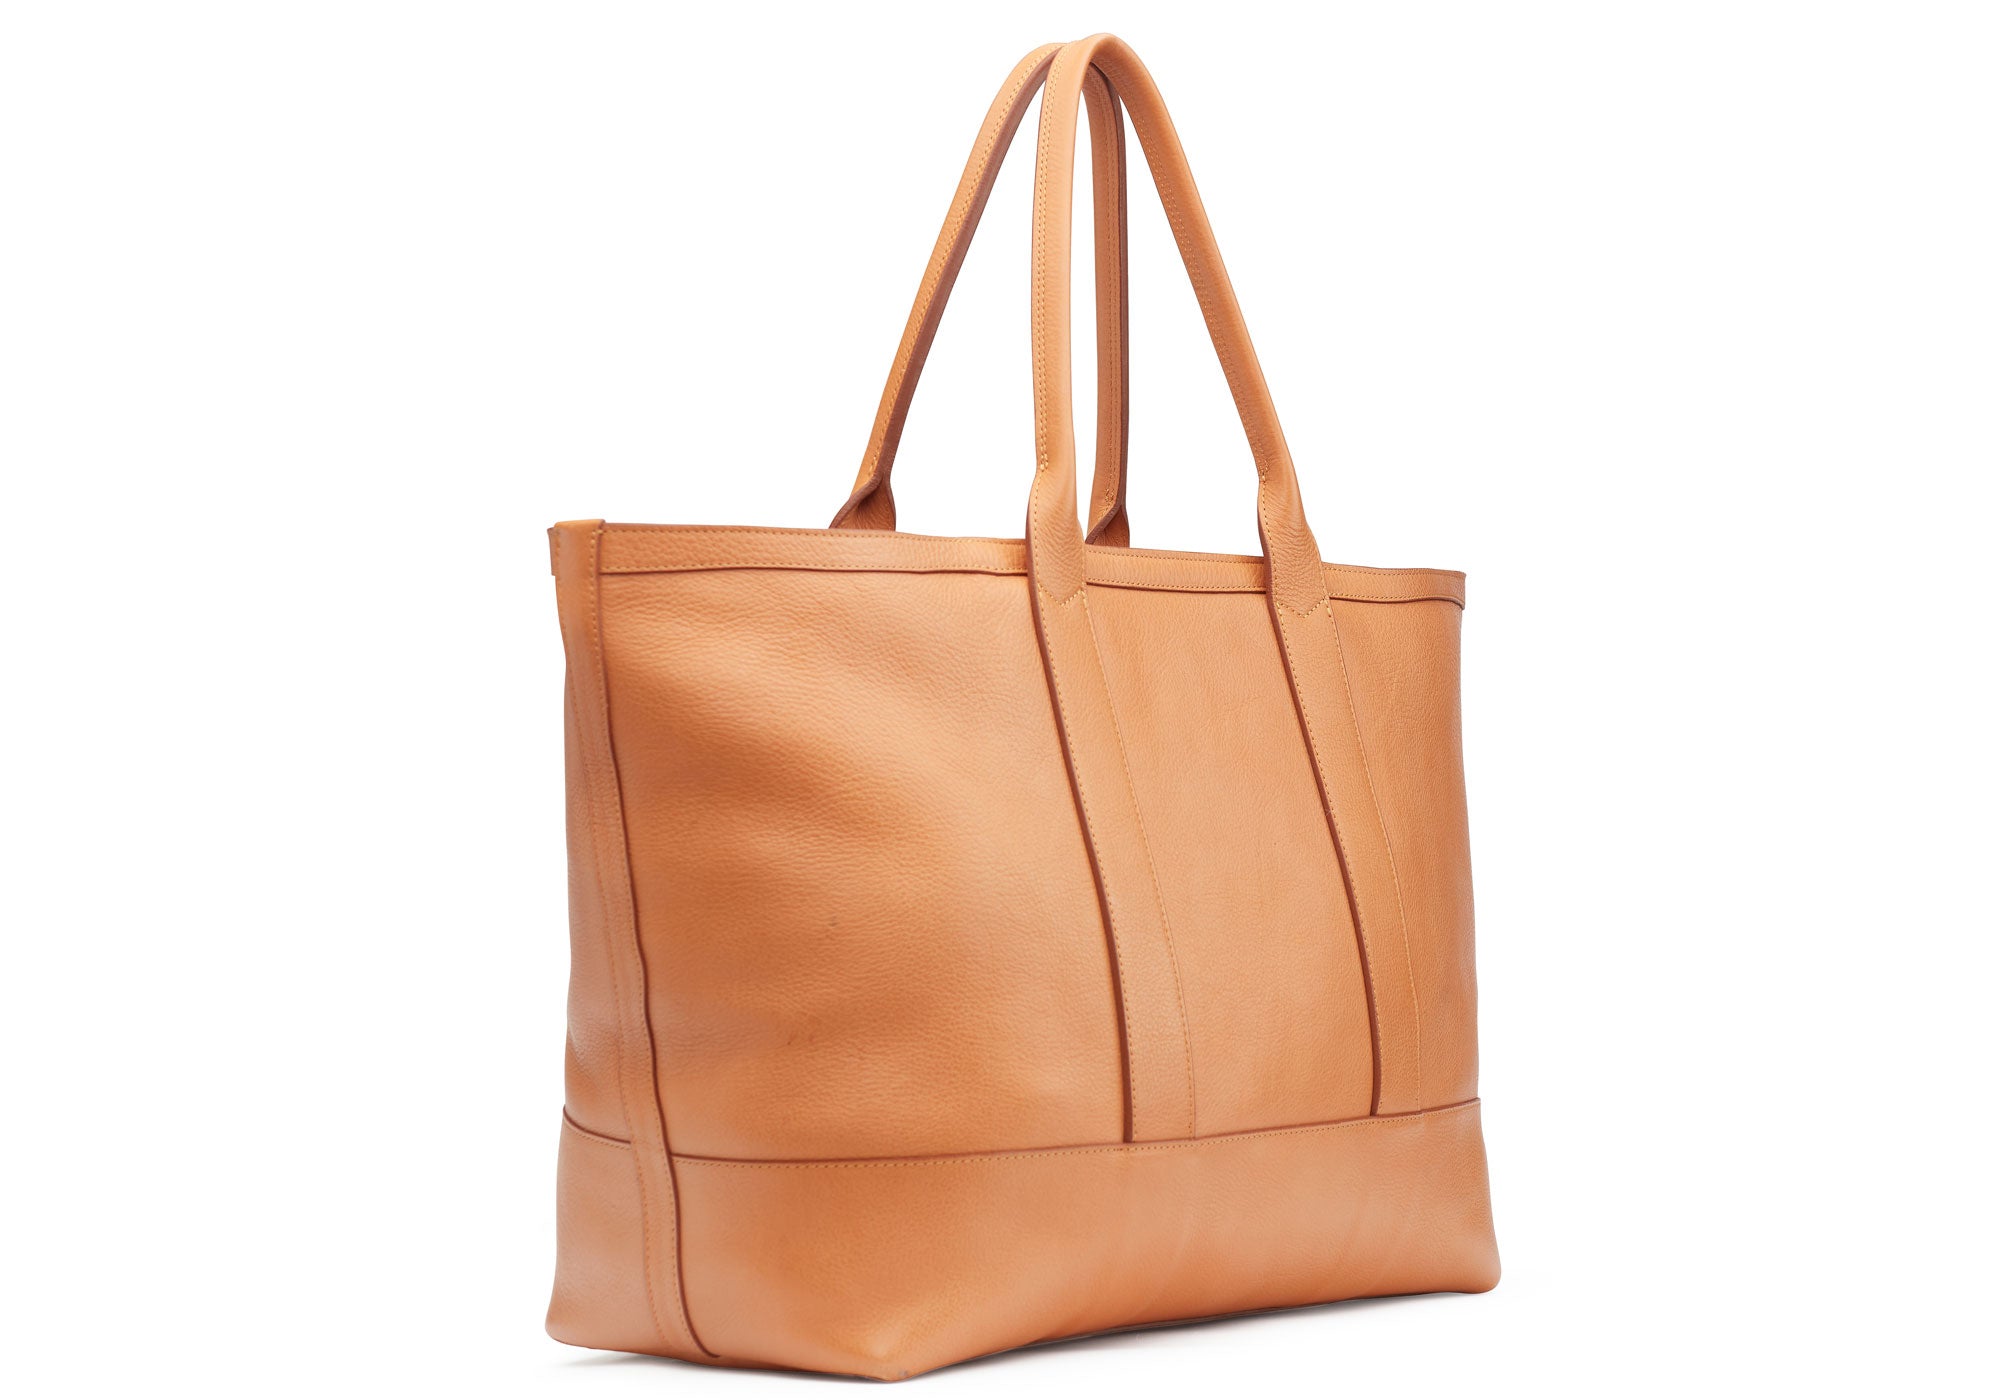 Fossil Camel Brown Leather Large Tote Handbag Shoulder Bag 2 Front Pockets  Purse 